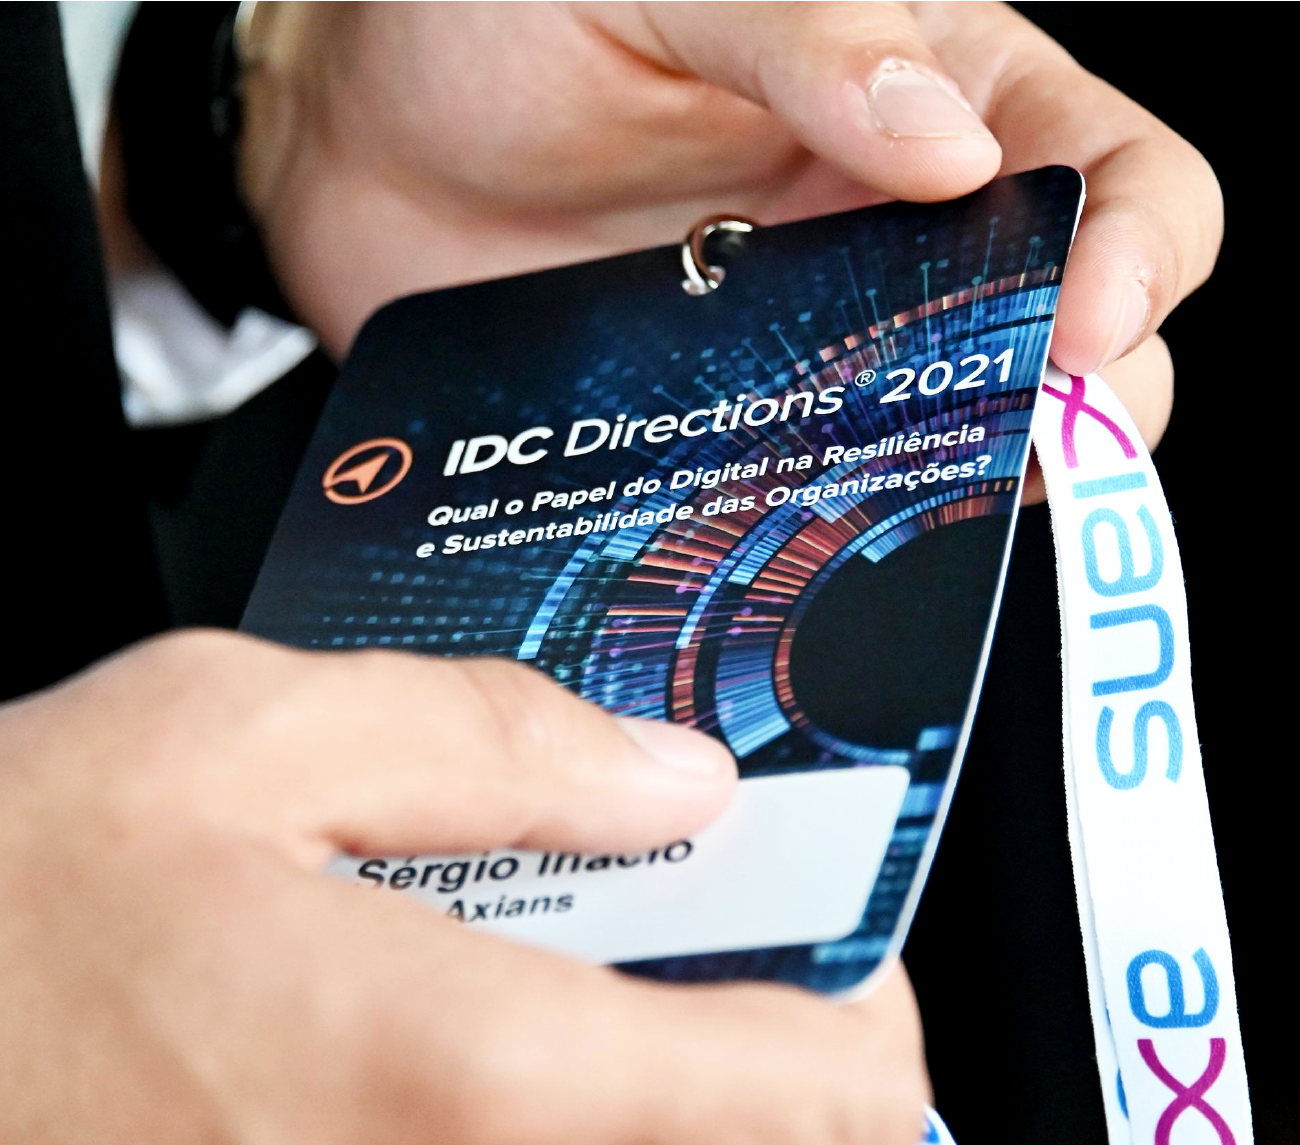 Acreditação IDC Directions